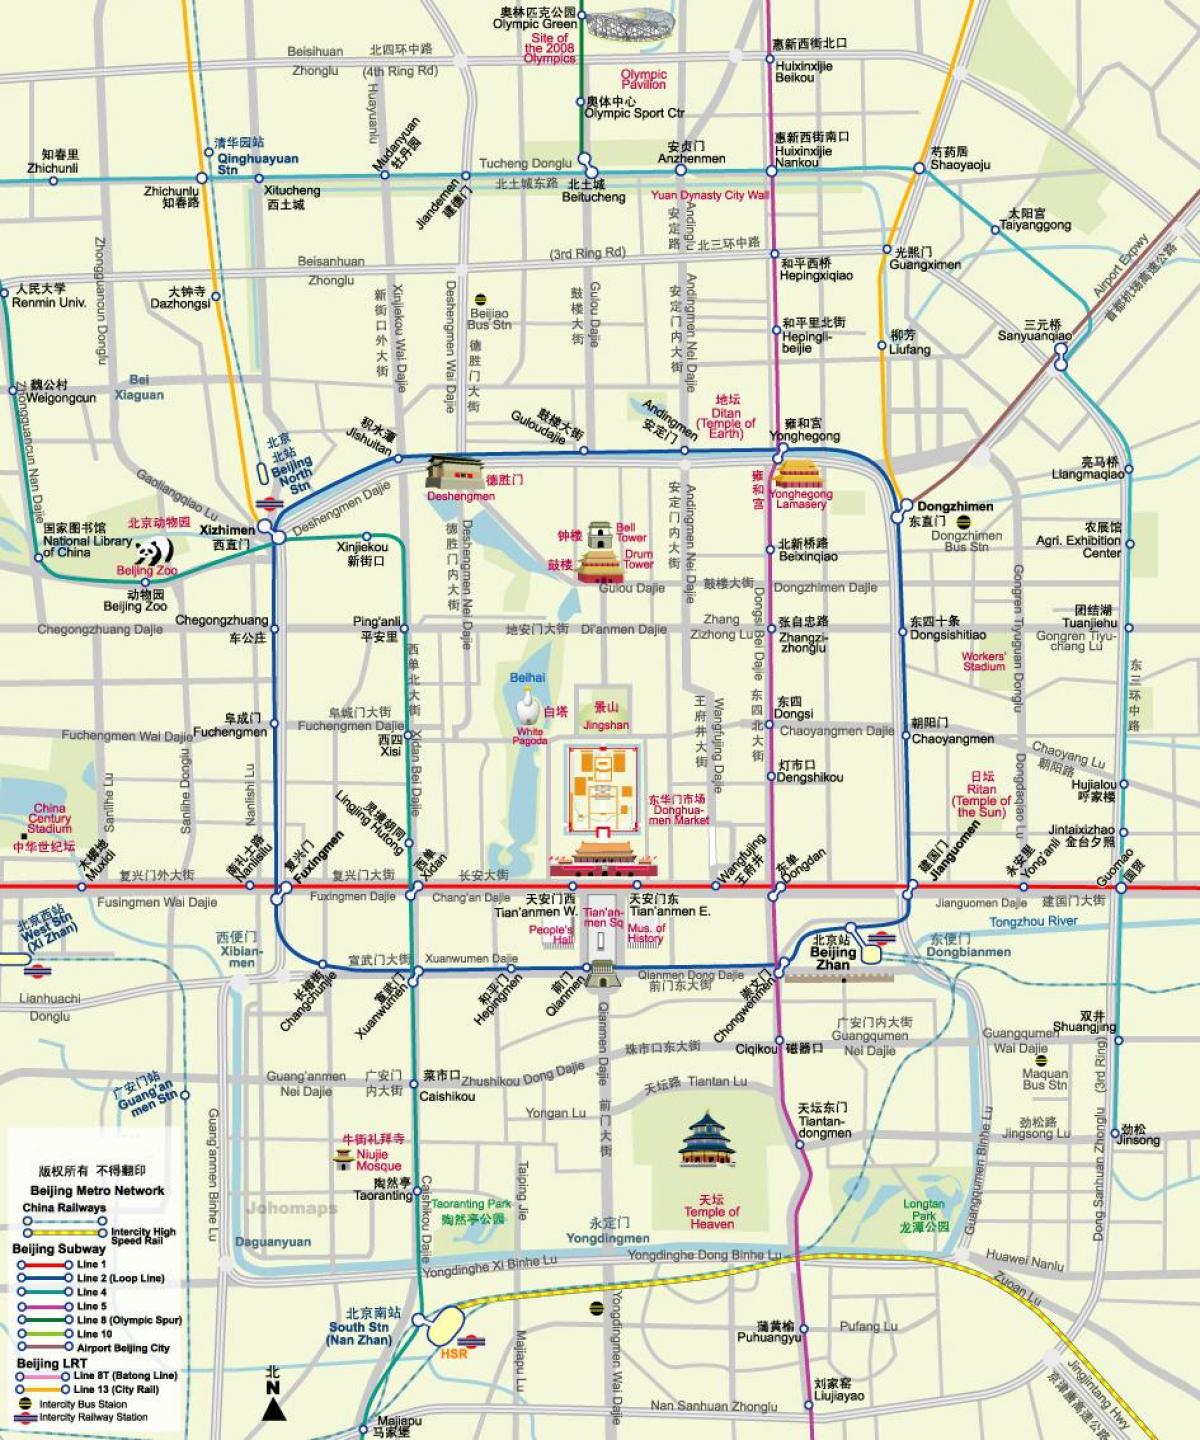 mapu Pekingu metro mapy, turistické atrakcie